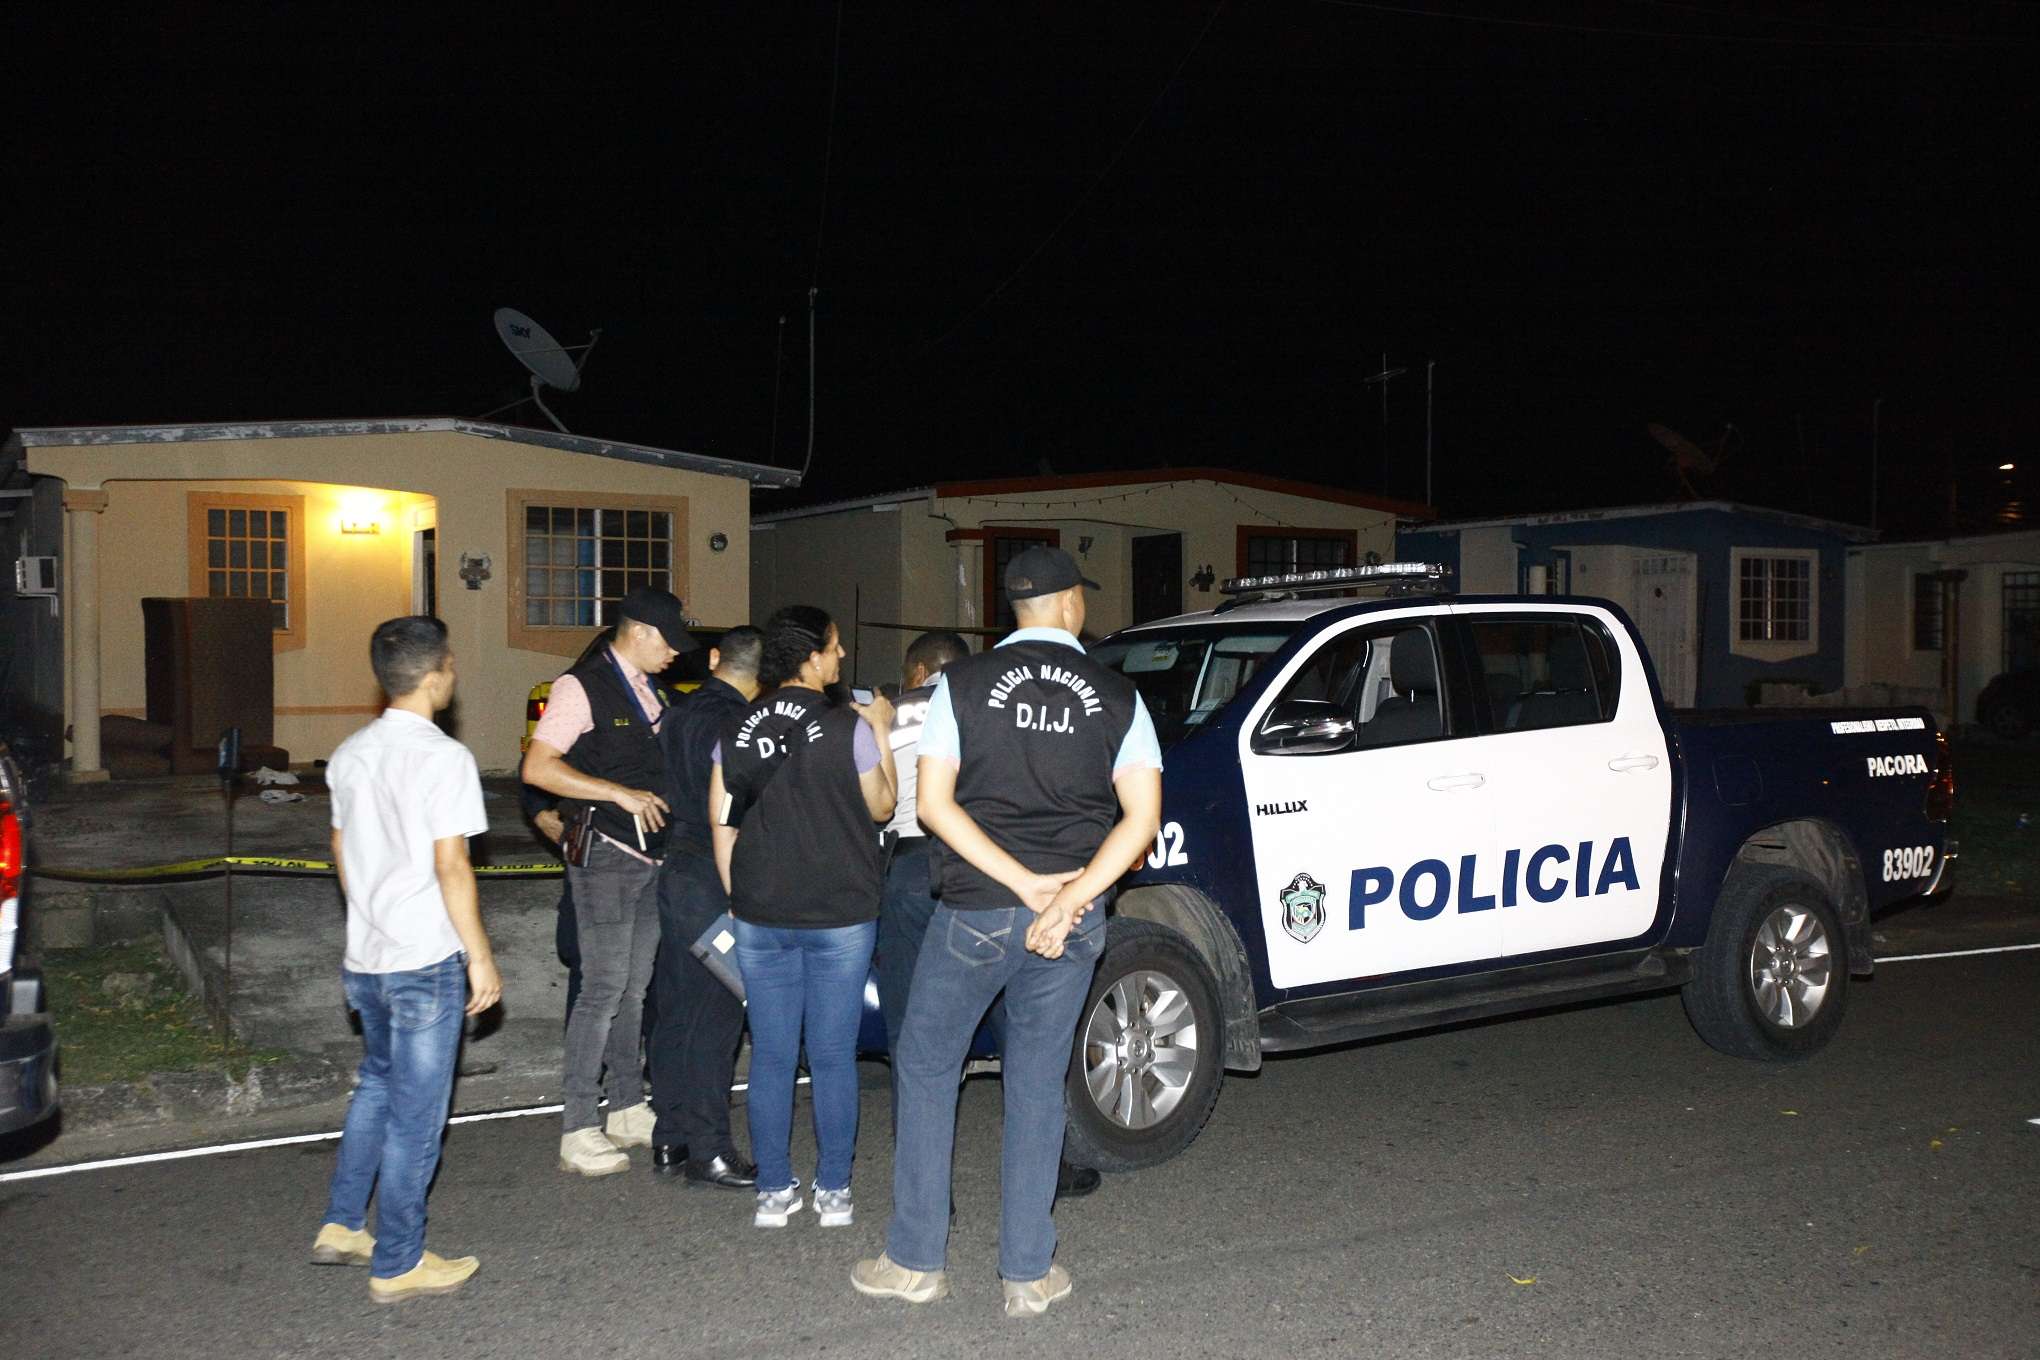 La Policía Nacional y otras autoridades llegaron a la escena del crimen, la noche de los hechos. 